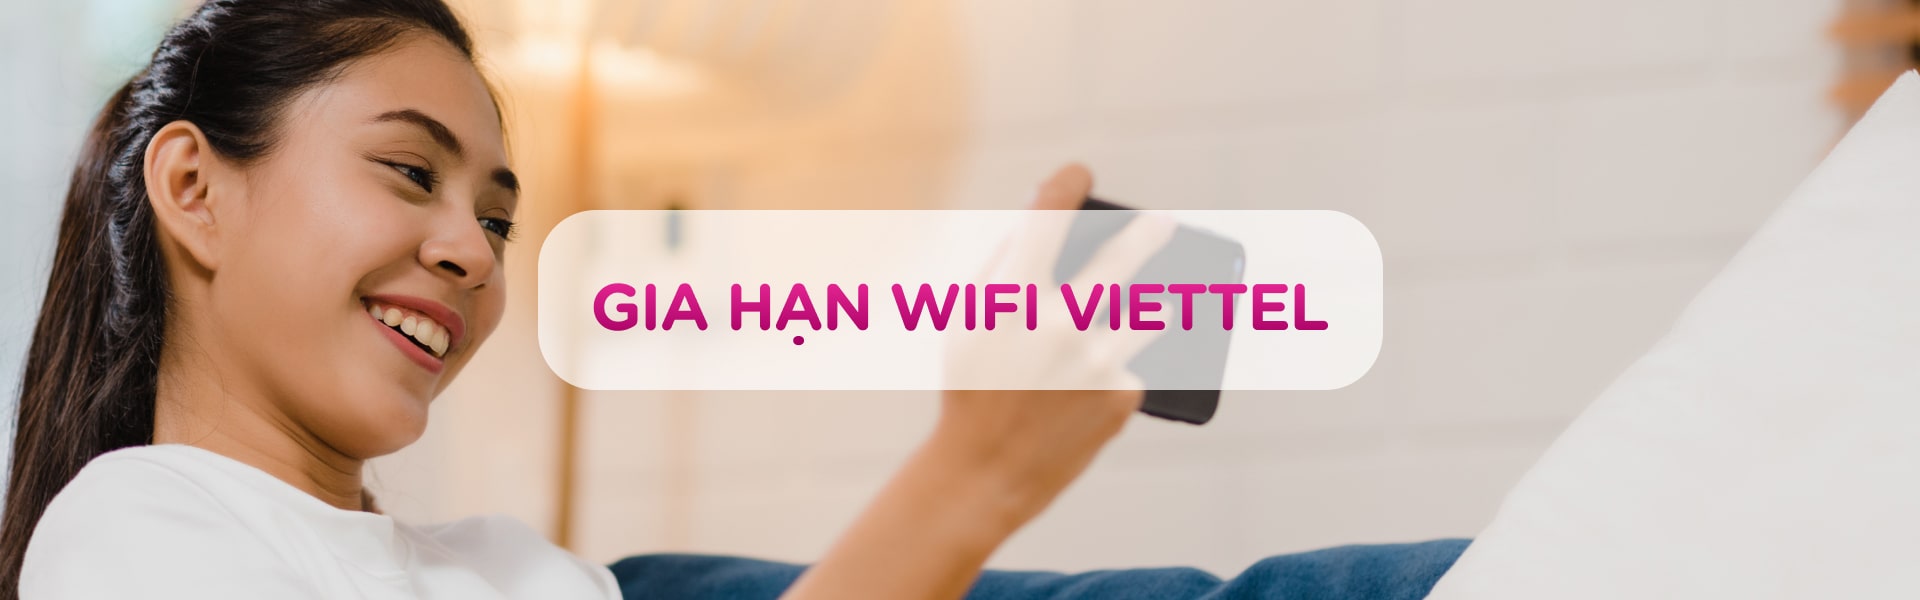 Hướng dẫn cách gia hạn WiFi Viettel nhanh gọn